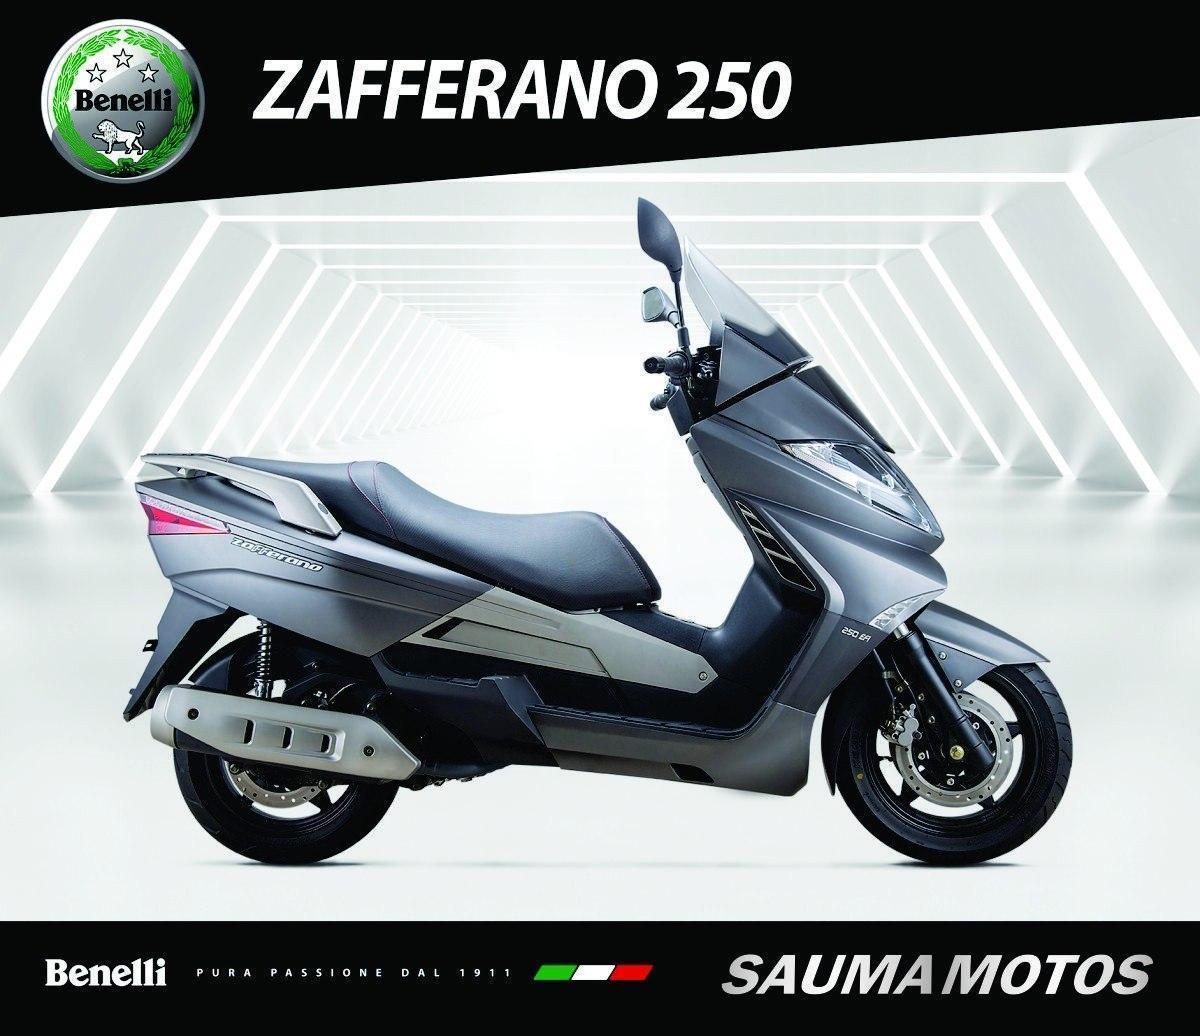 Benelli Zaferano 250 - Entrega Inmediata Benelli Sauma Motos